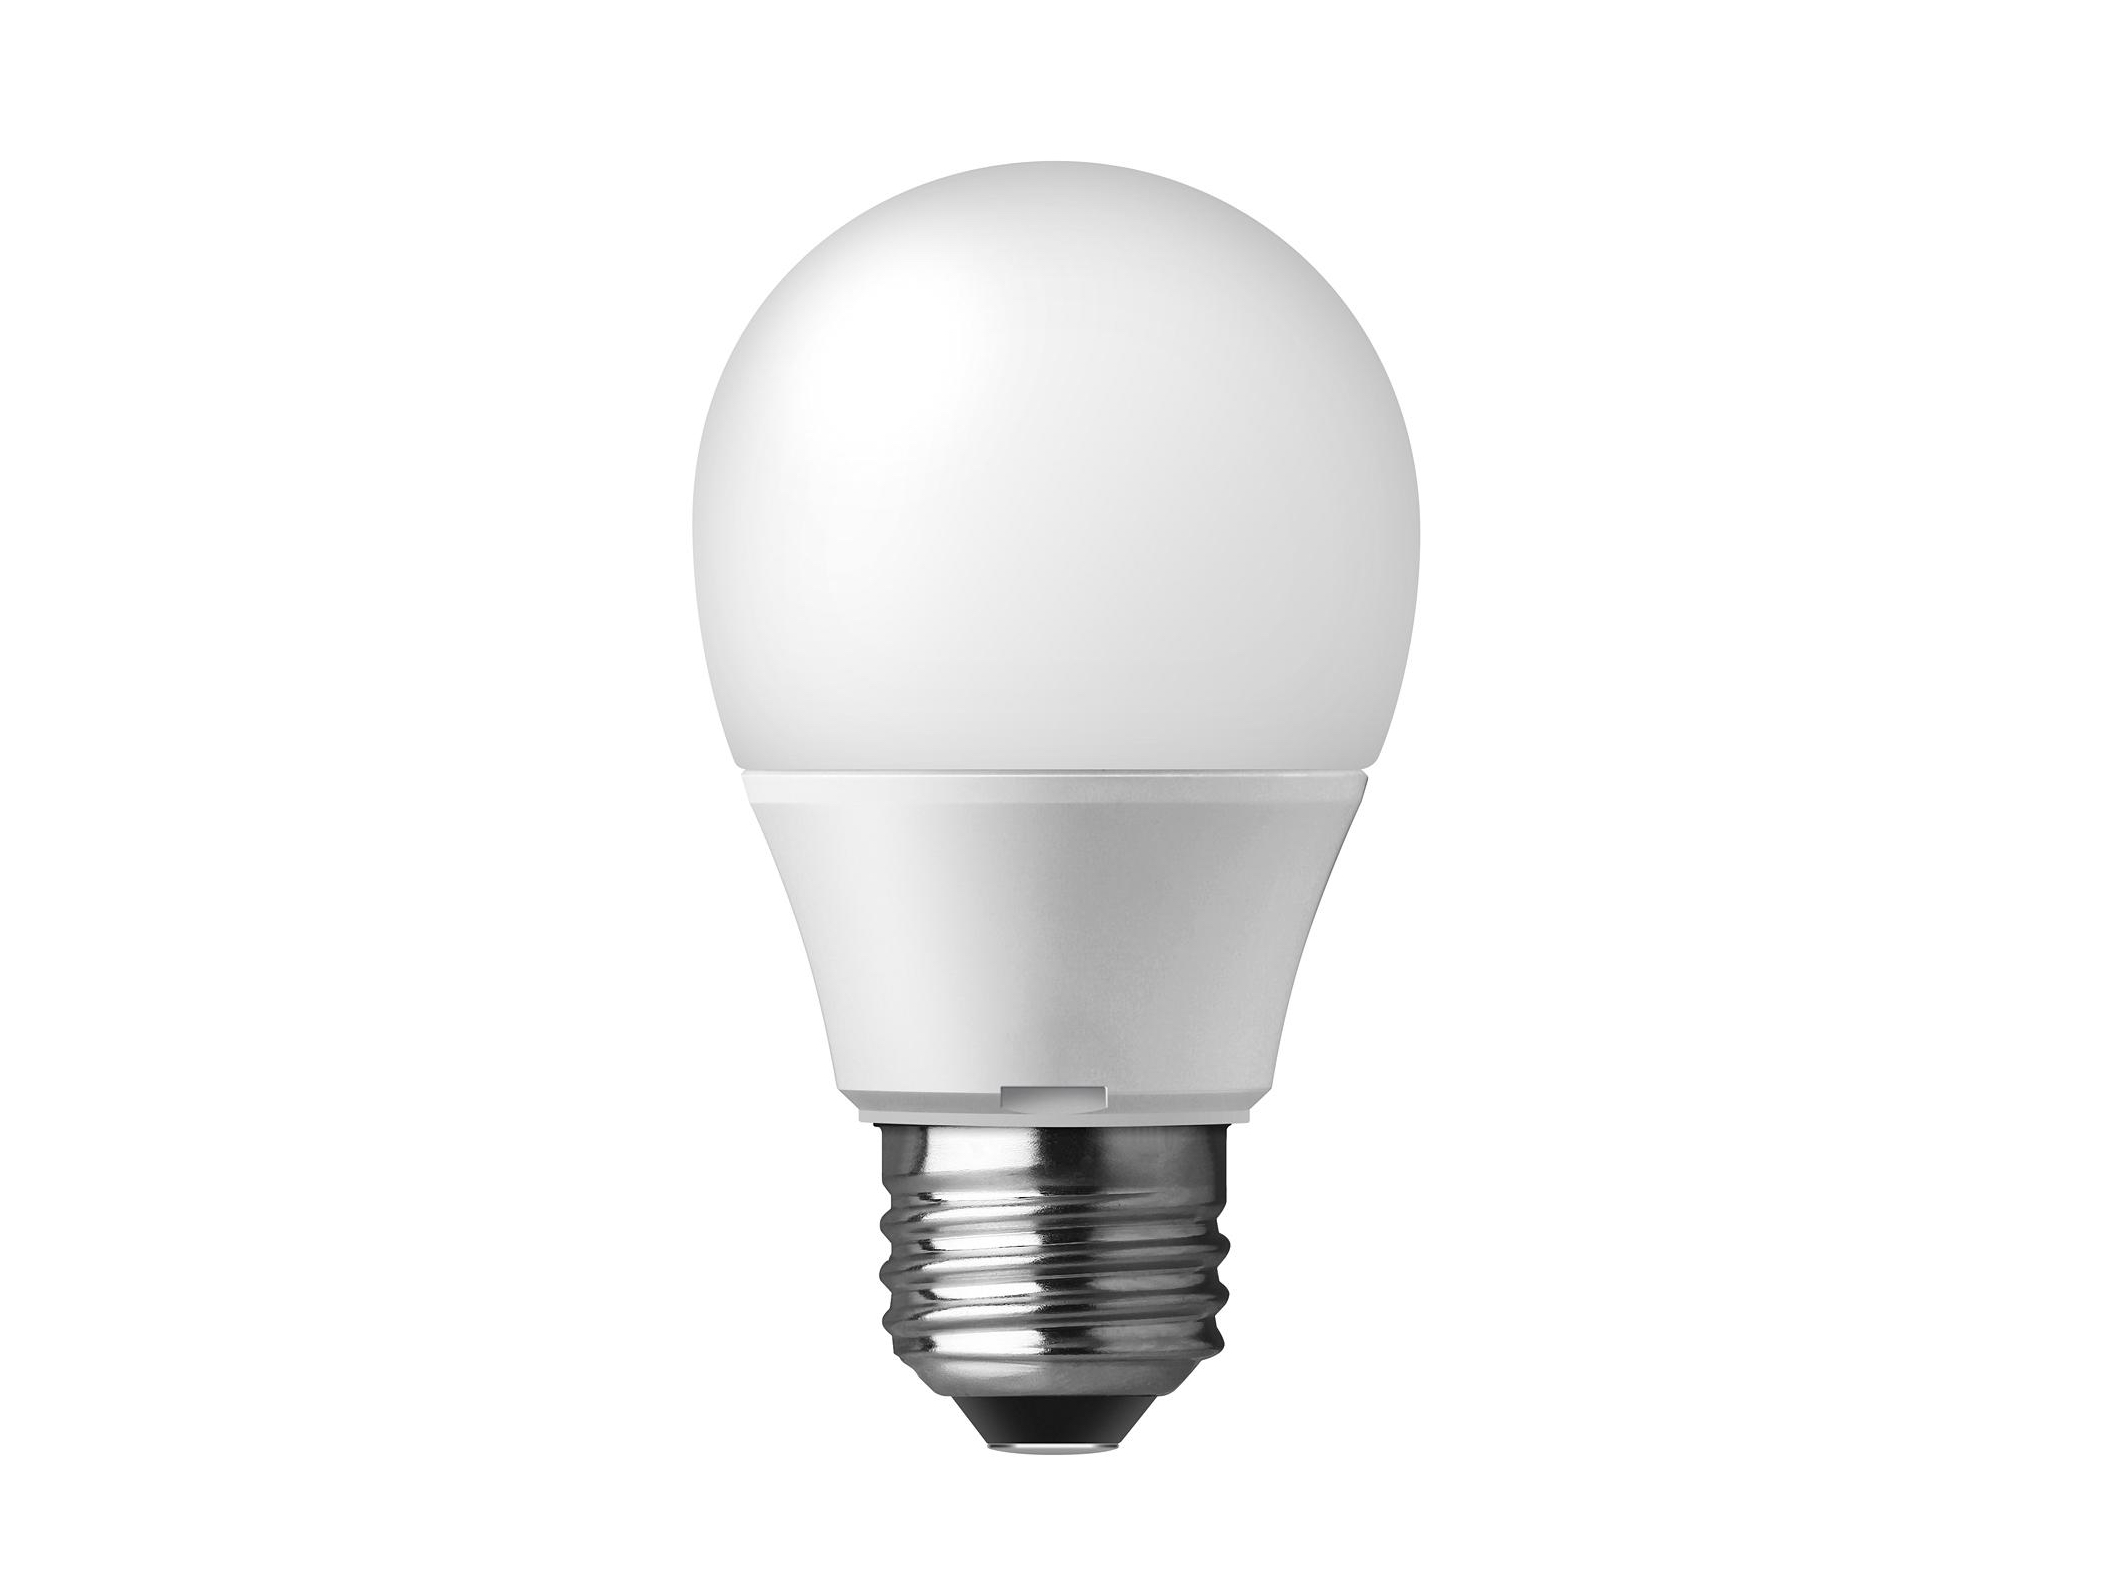 パナソニック、新たな光色「温白色」を追加したLED電球の最上位モデル 